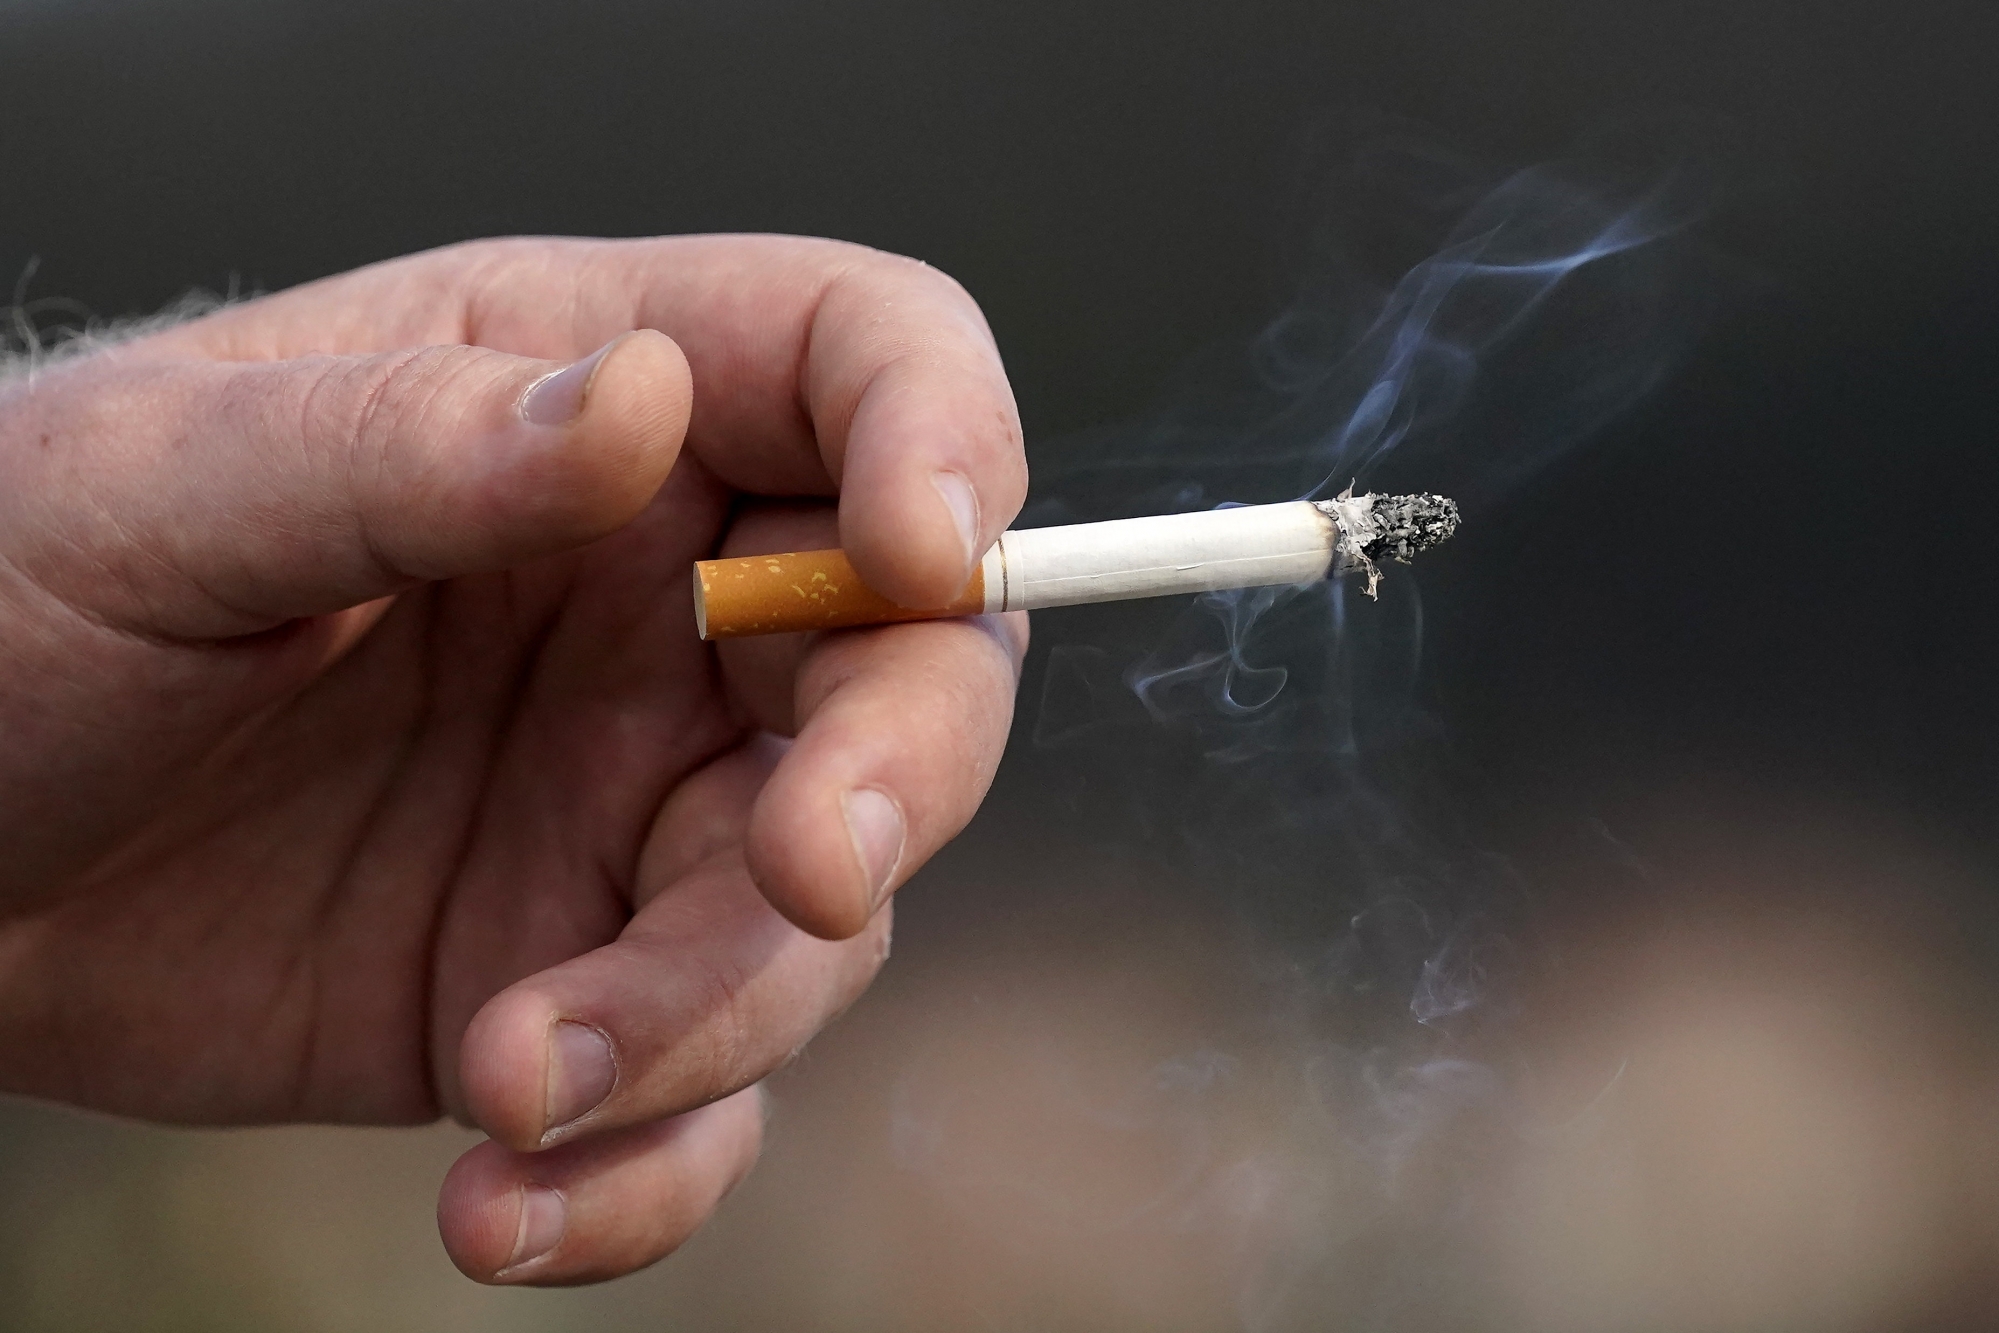 Le Conseil national a débattu, mardi, des limites de la publicité pour les cigarettes. (illustration)